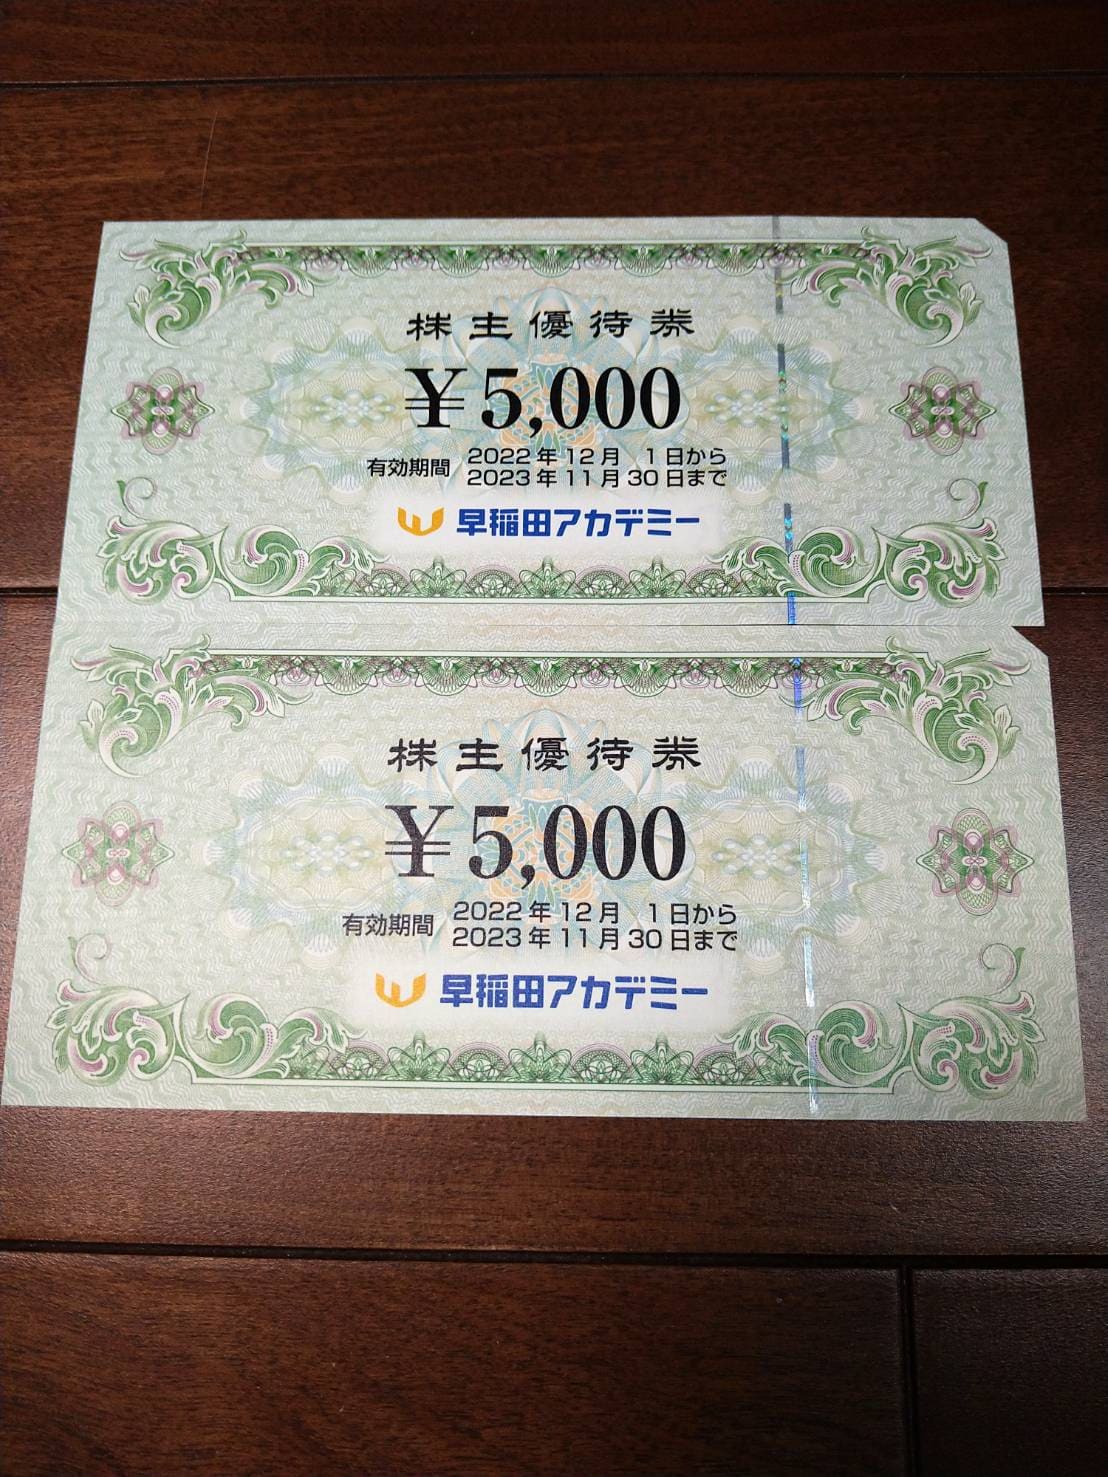 早稲田アカデミーから届いた株主優待商品券の写真